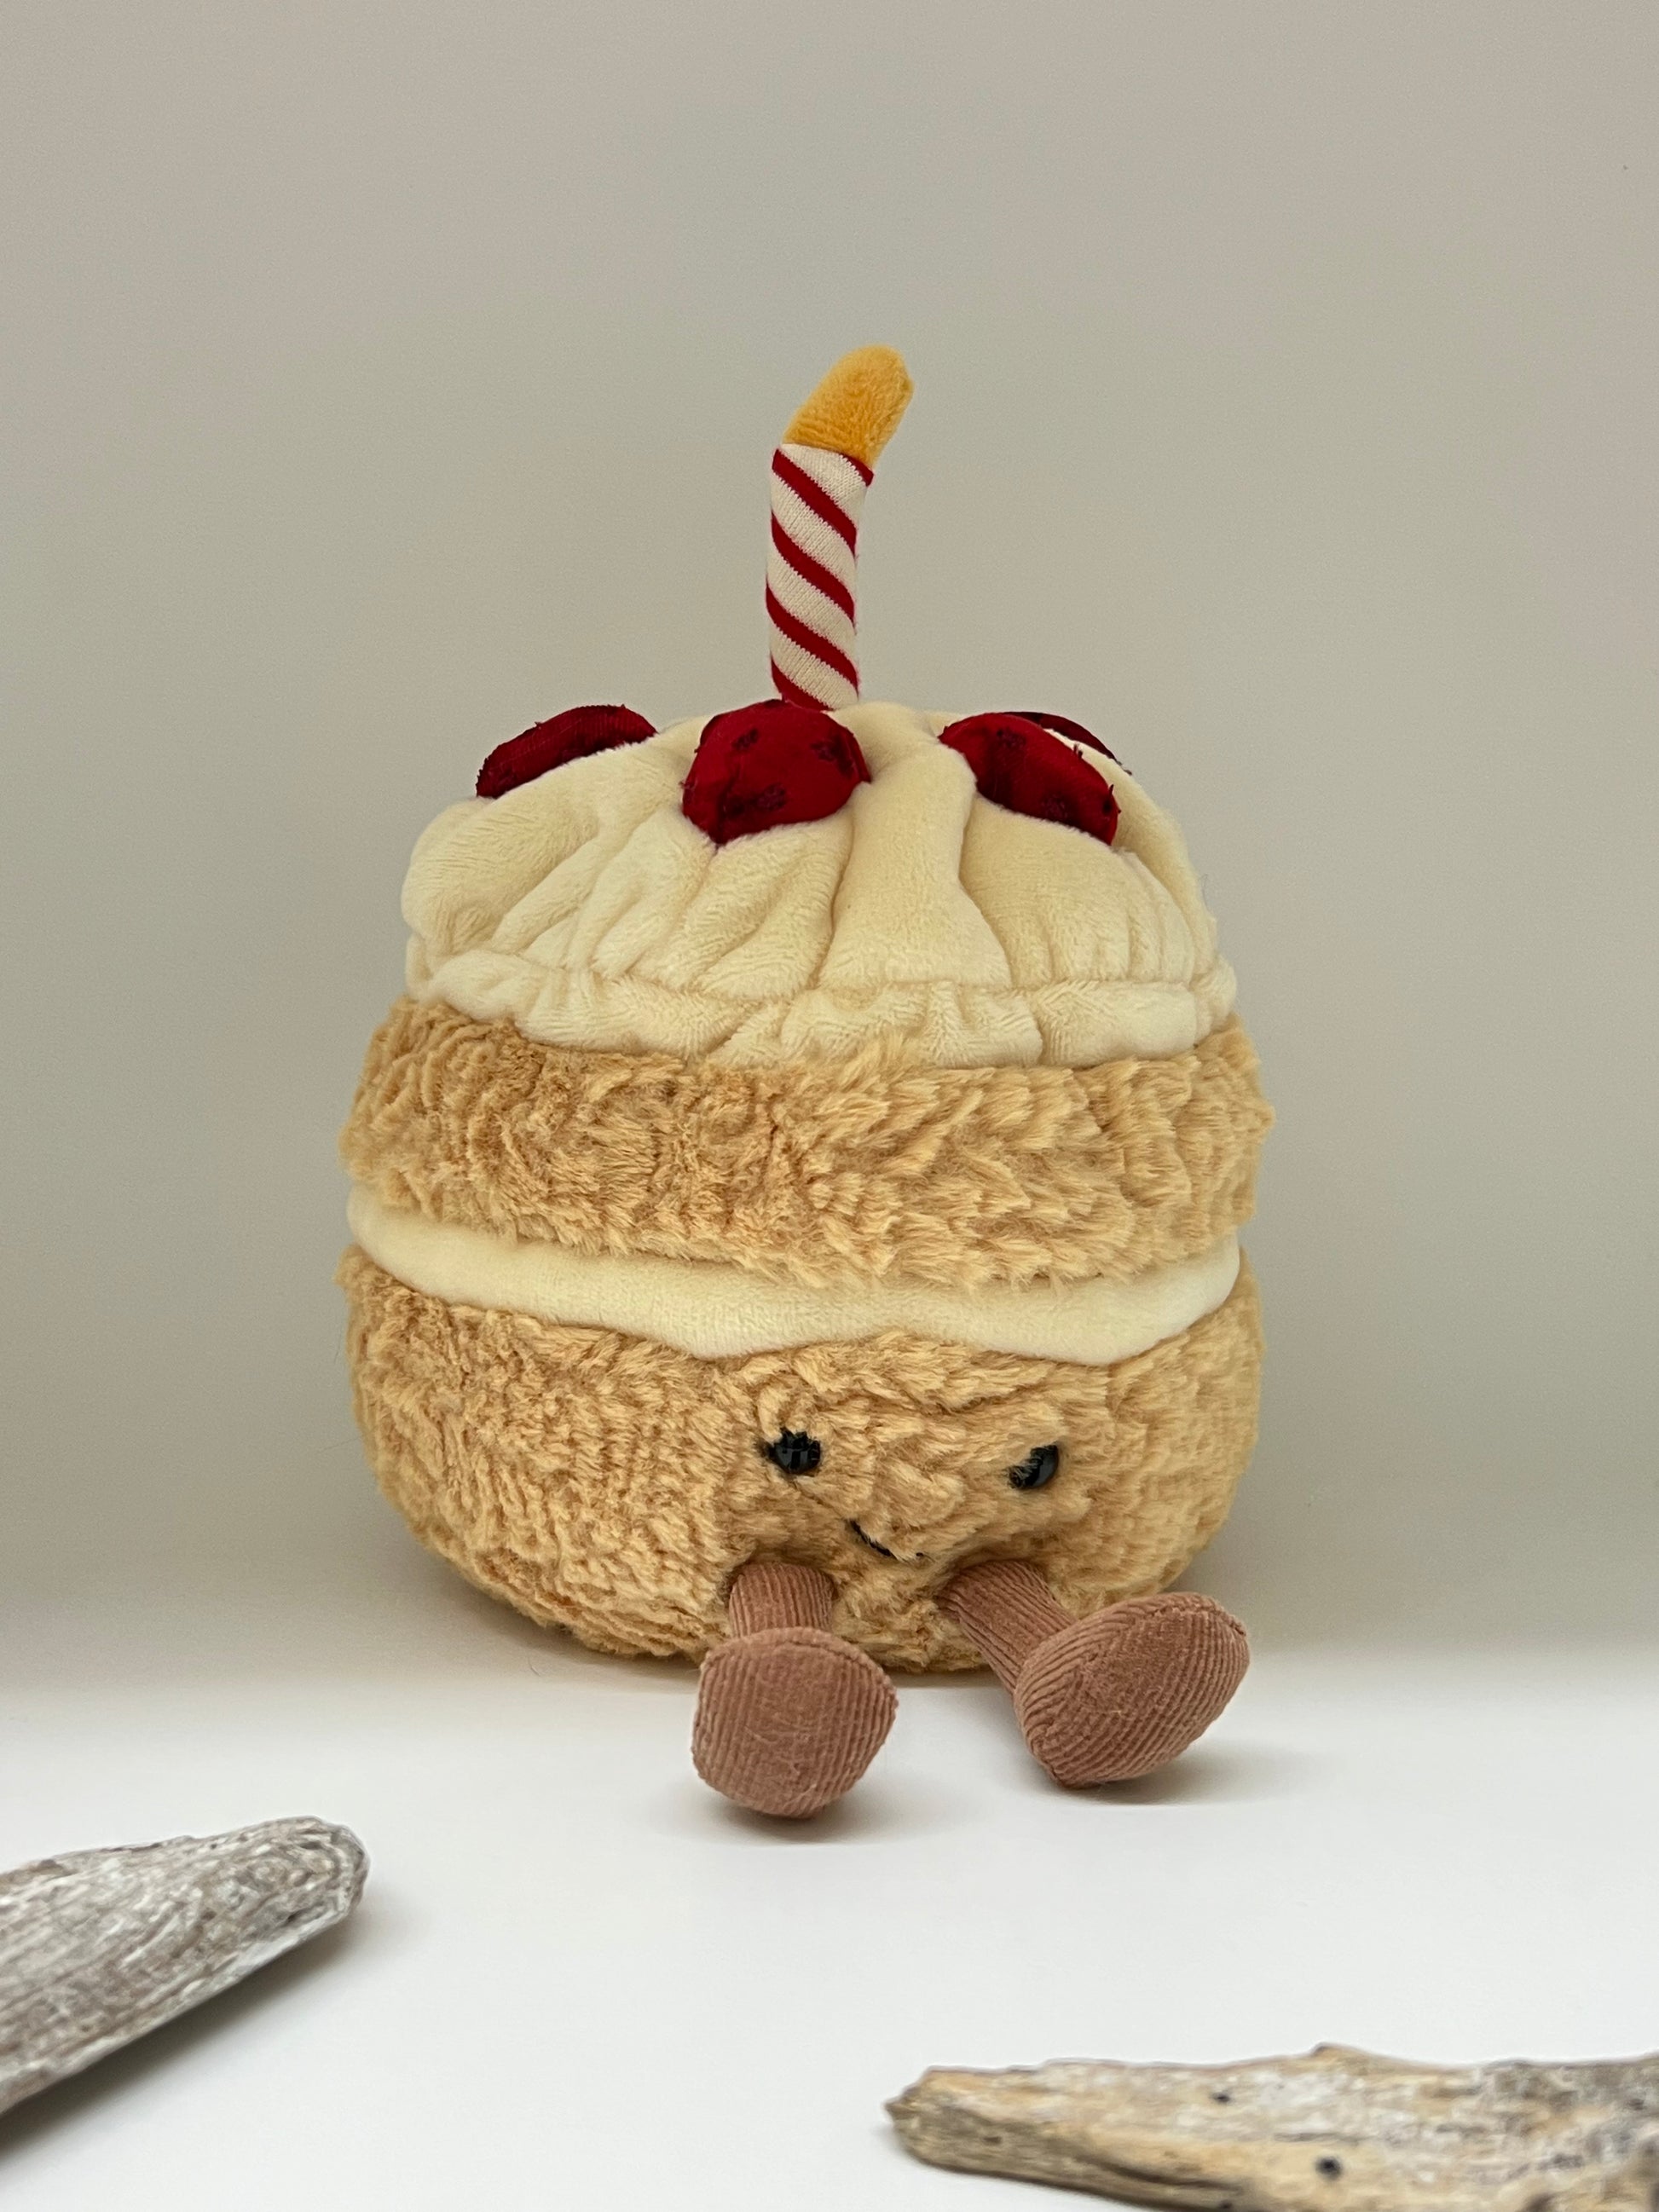  Gâteau d'anniversaire amusante, peluche dessinée à Londres A2BC Jellycat Londres